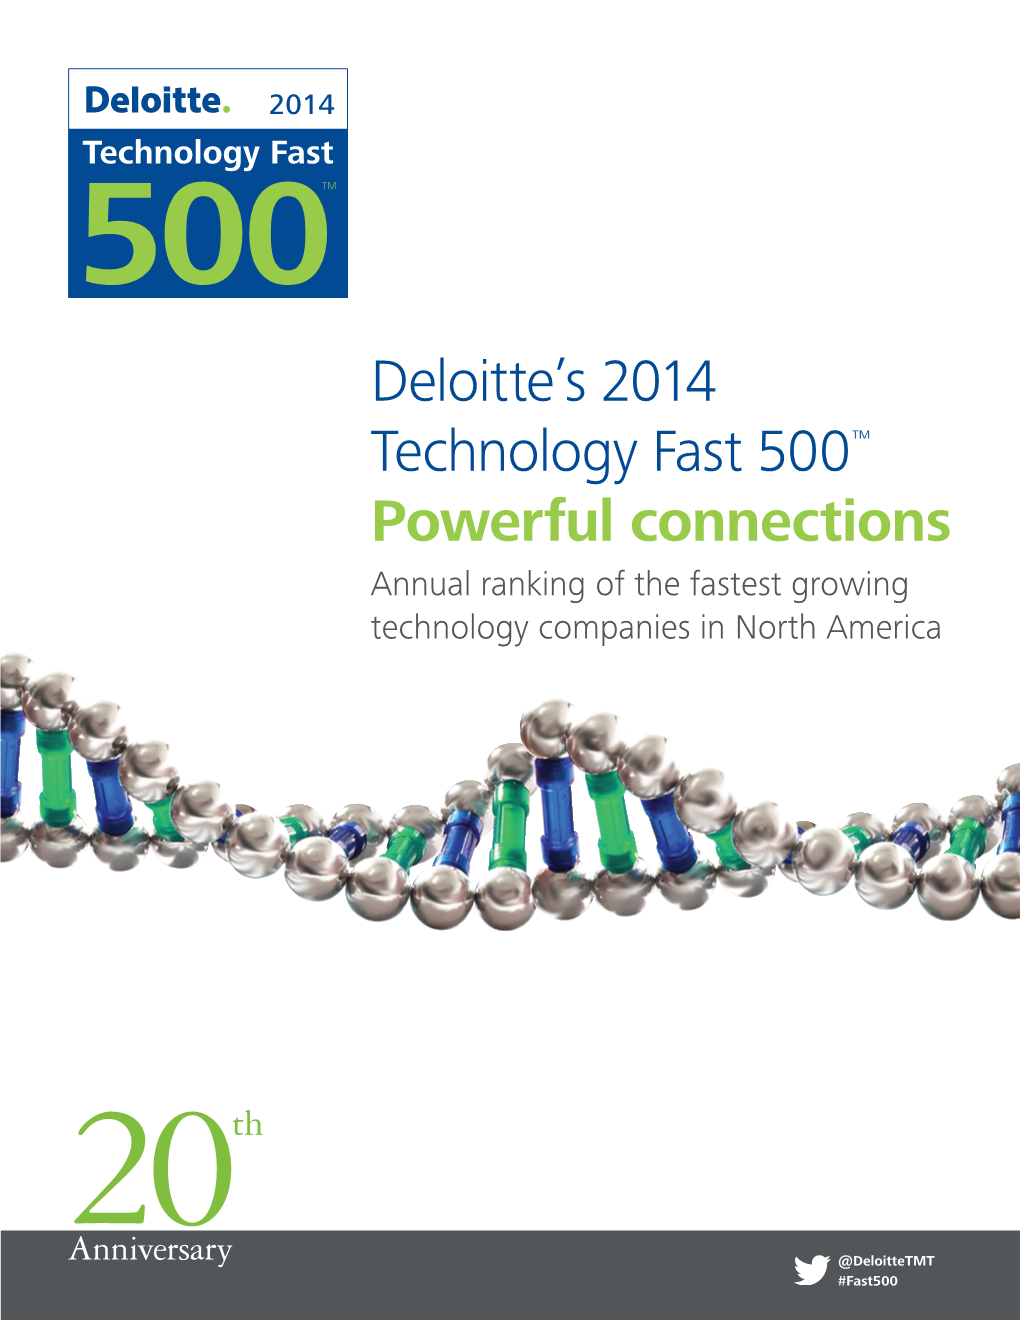 Deloitte Technology Fast 500 (2014)